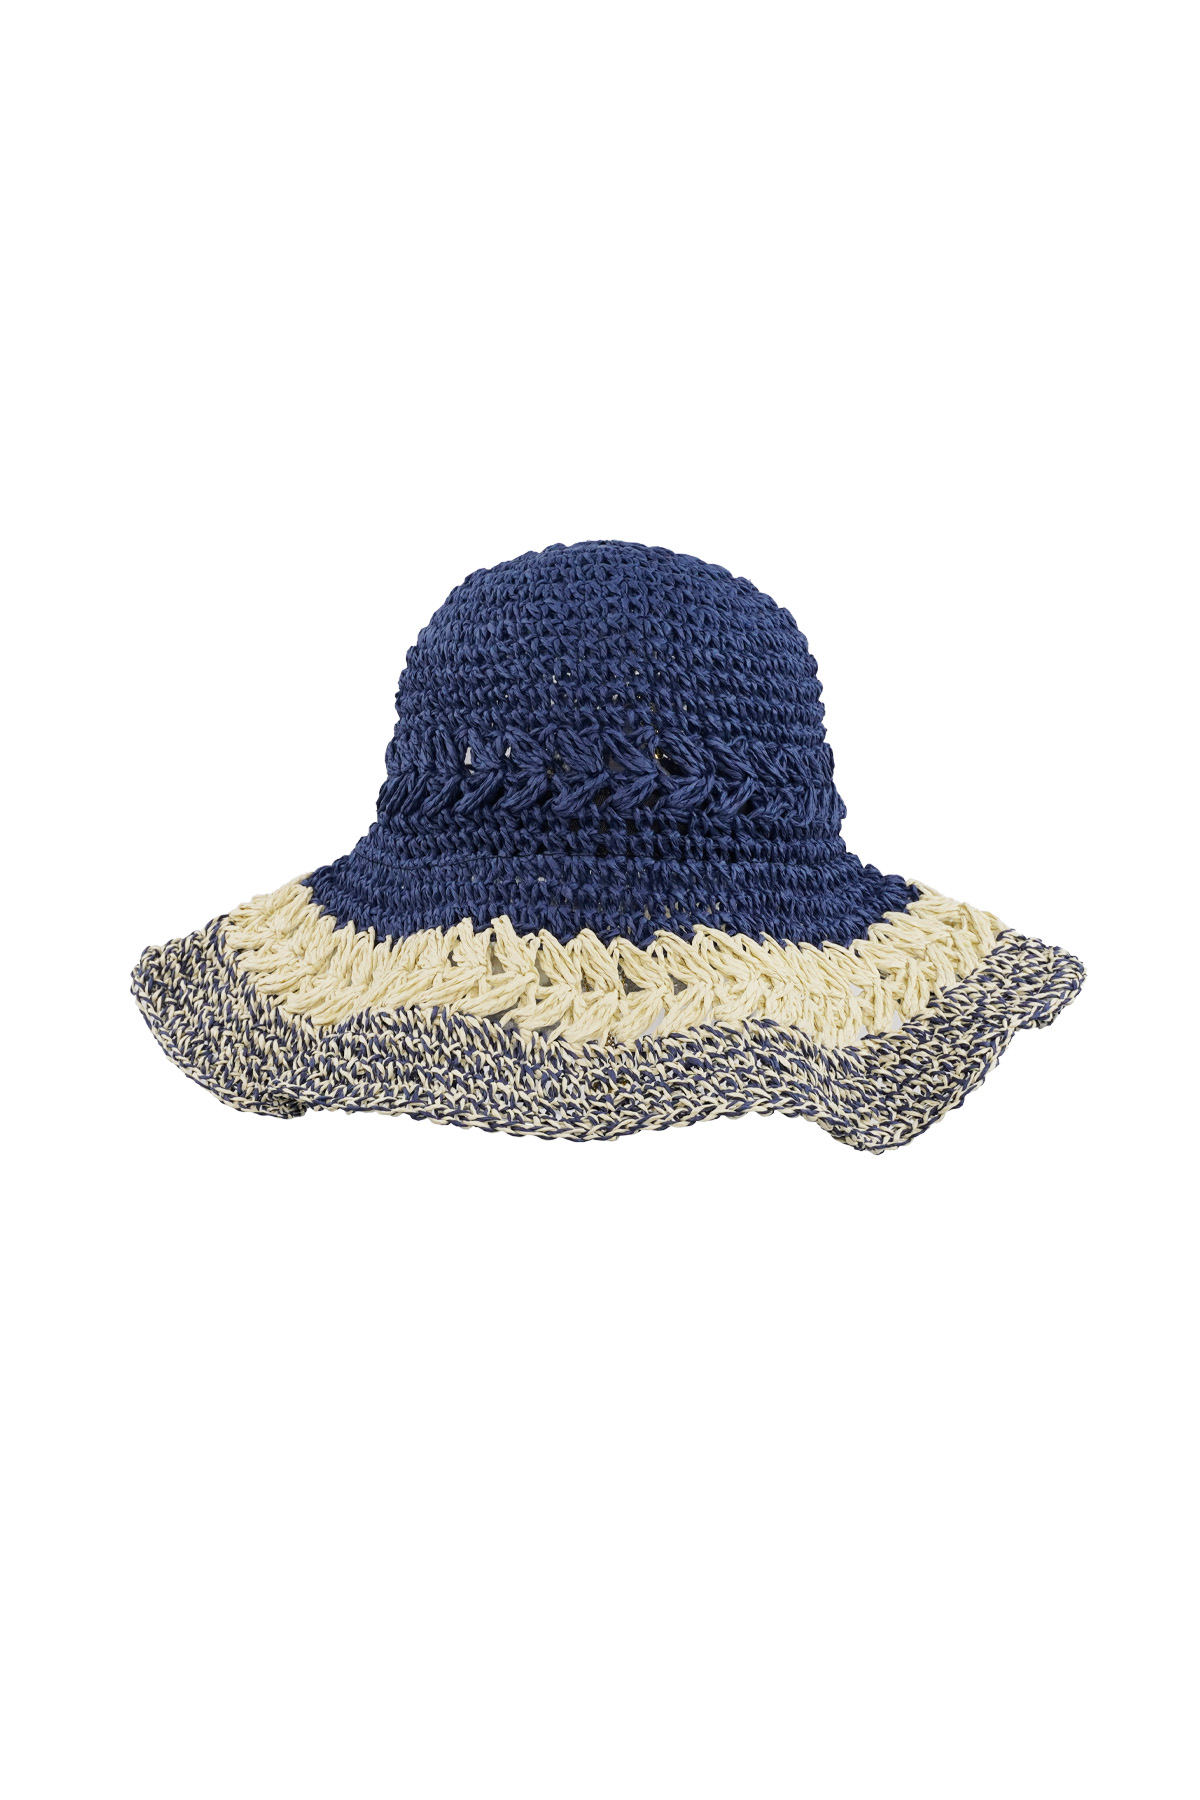 Geflochtene Mütze mit Lagen - marineblau h5 